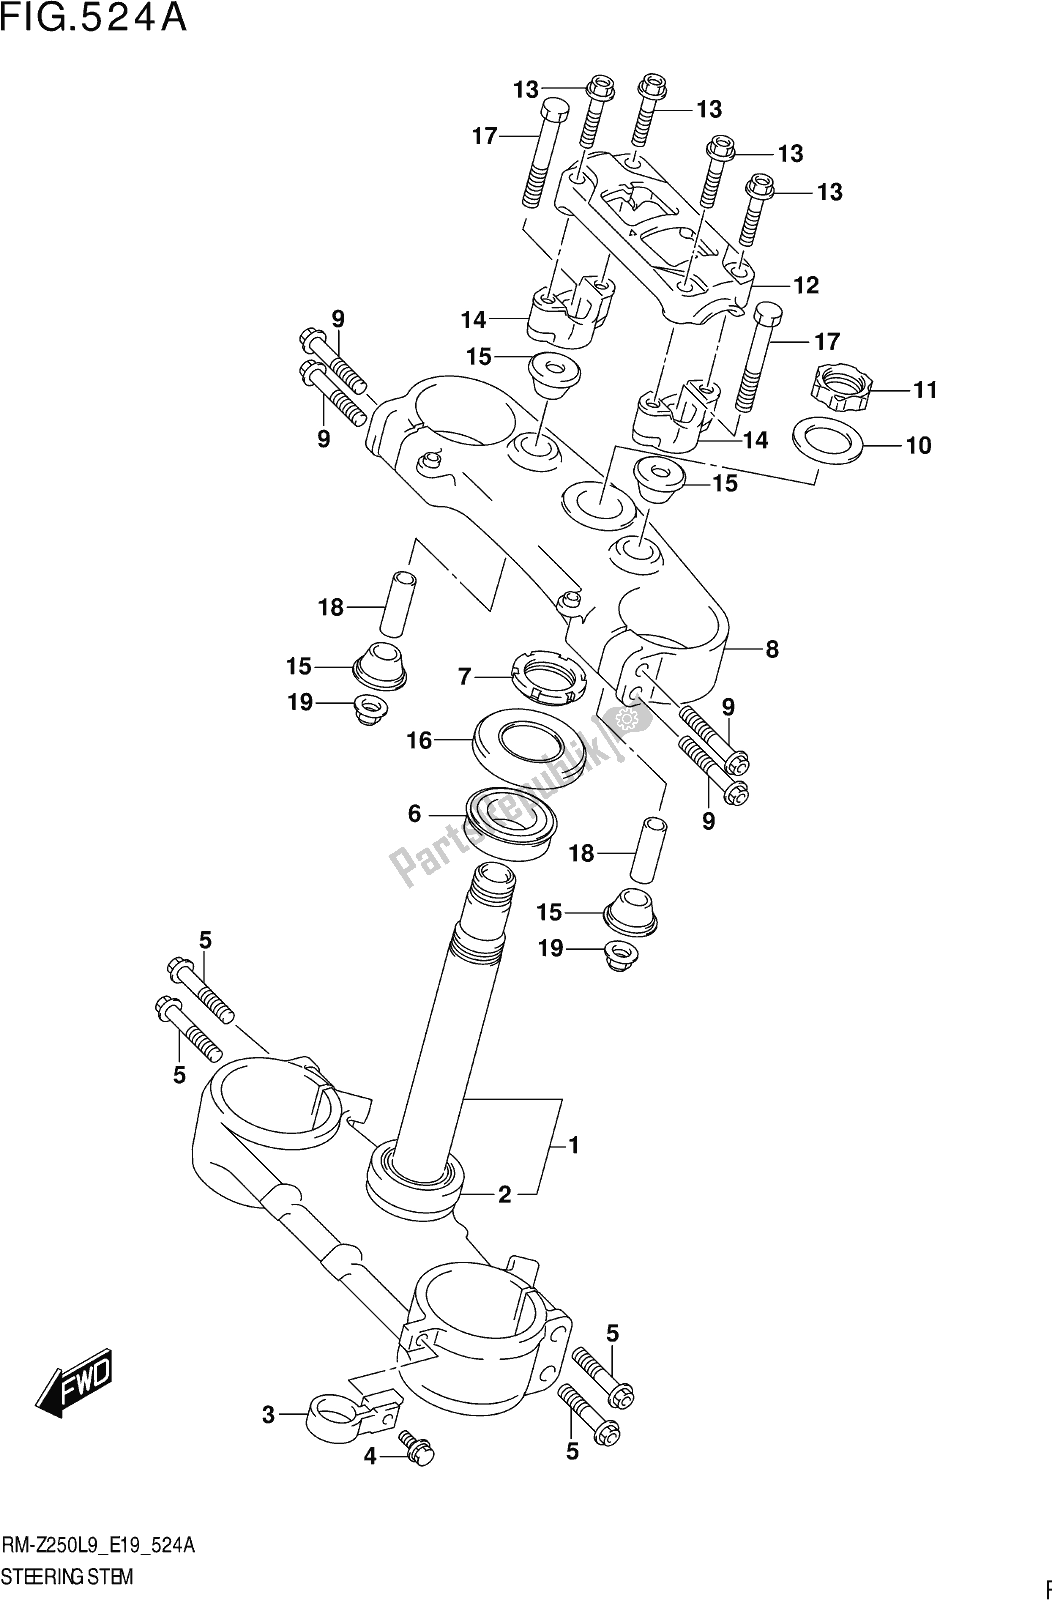 Alle onderdelen voor de Fig. 524a Steering Stem van de Suzuki RM-Z 250 2019